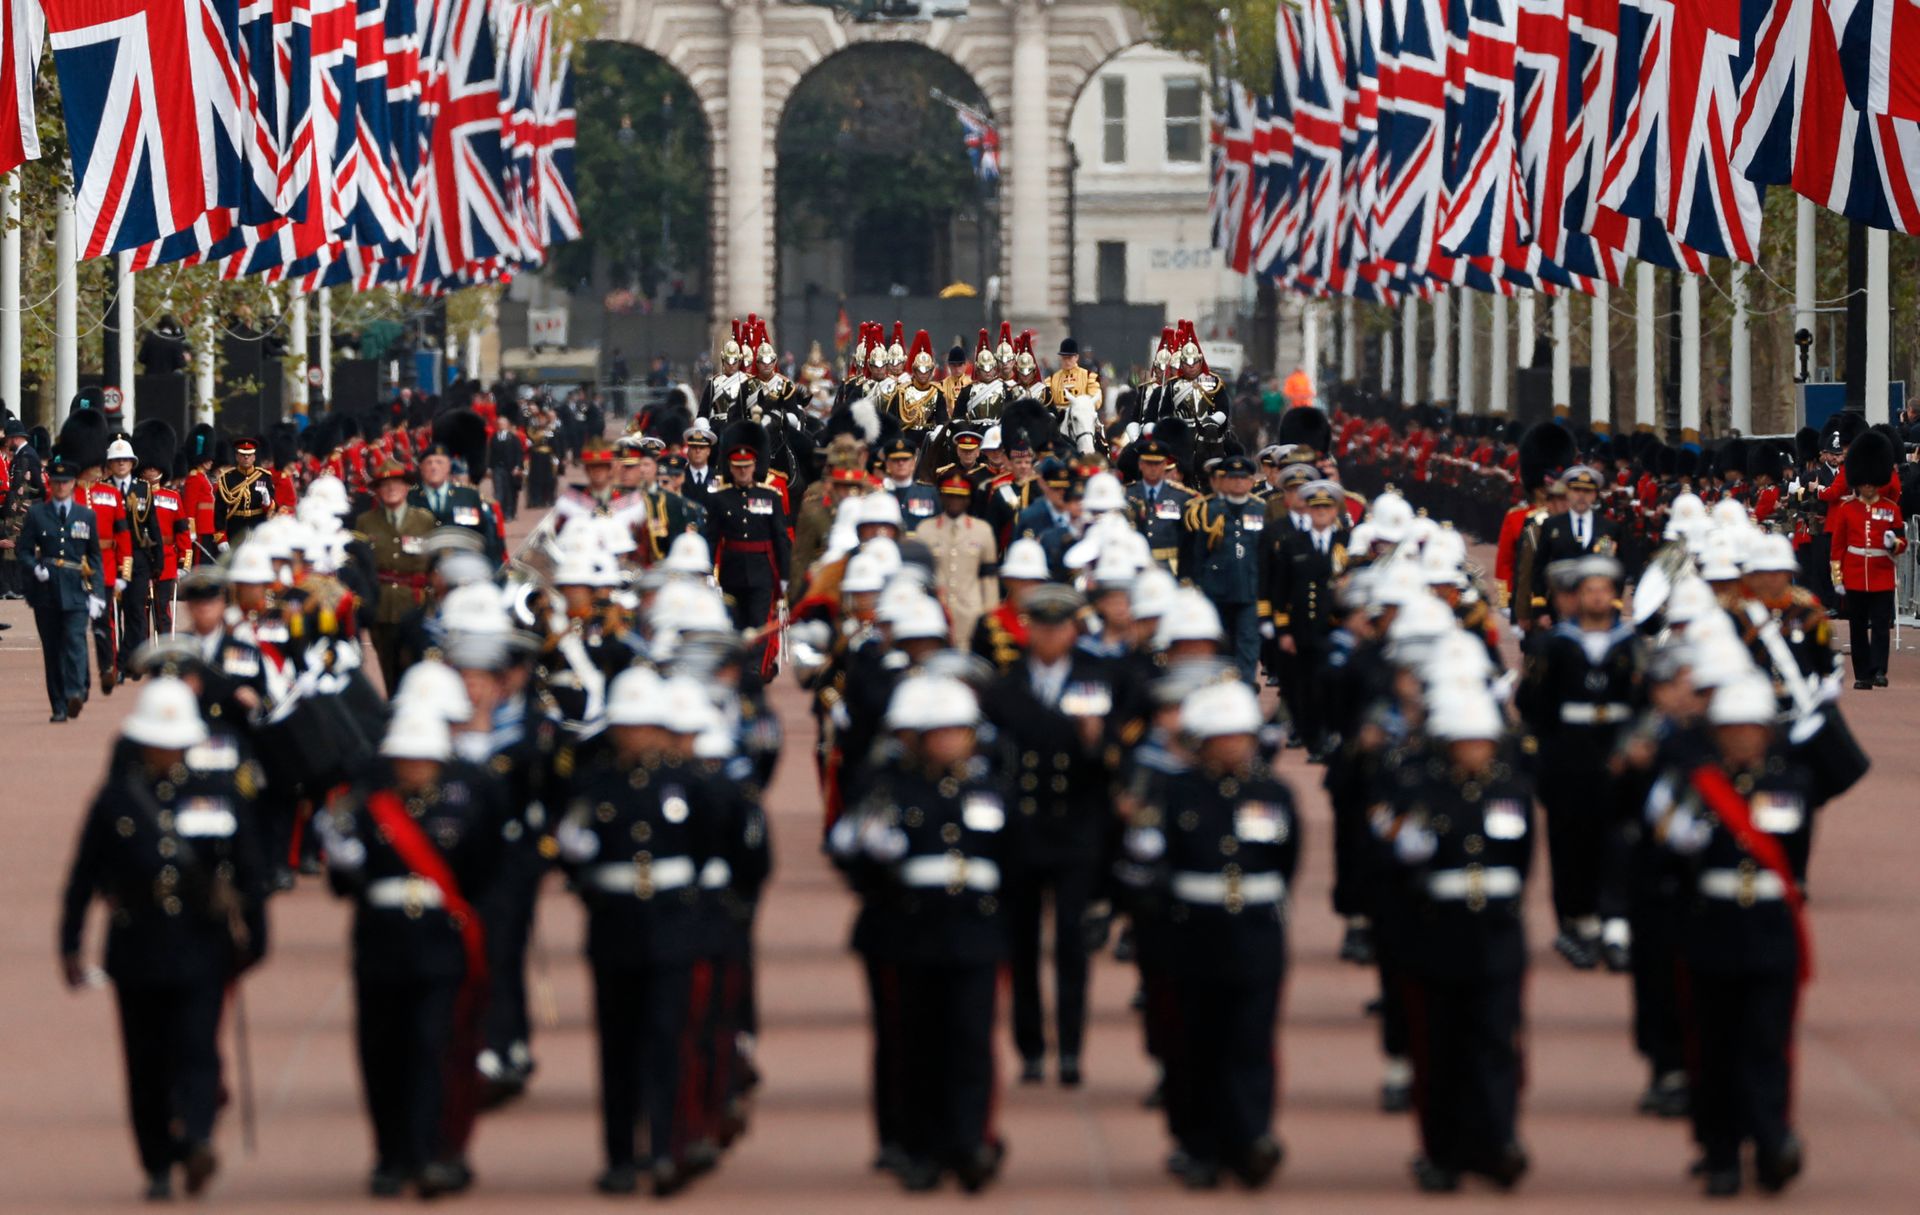 Mange uniformerte menn med hatter på og ryttere bak marsjerer i en bred gate med mange britiske flagg i rødt, hvitt og blått hengende på begge sier av veien. 